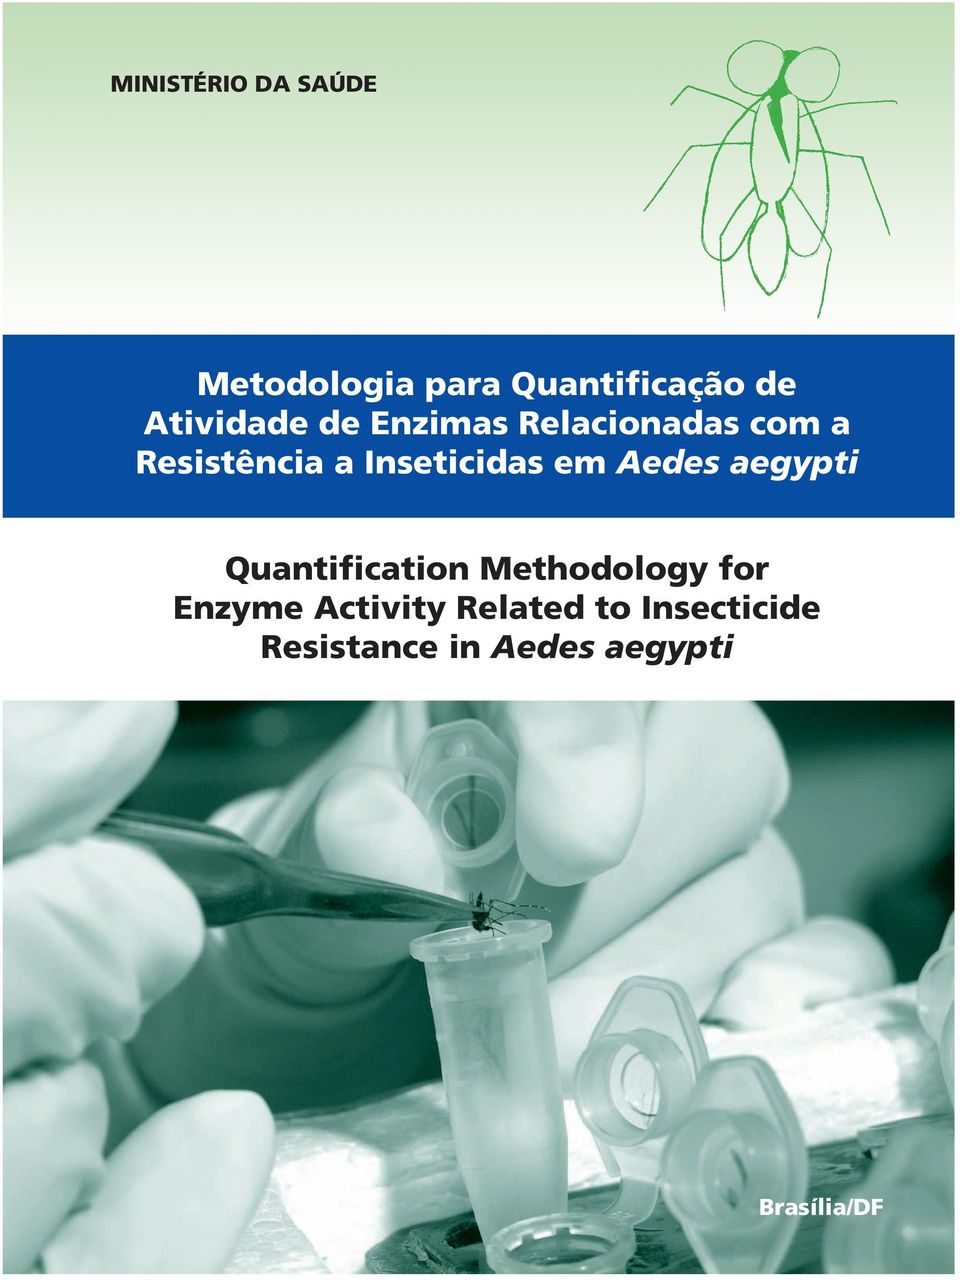 Inseticidas em Aedes aegypti Quantification Methodology for